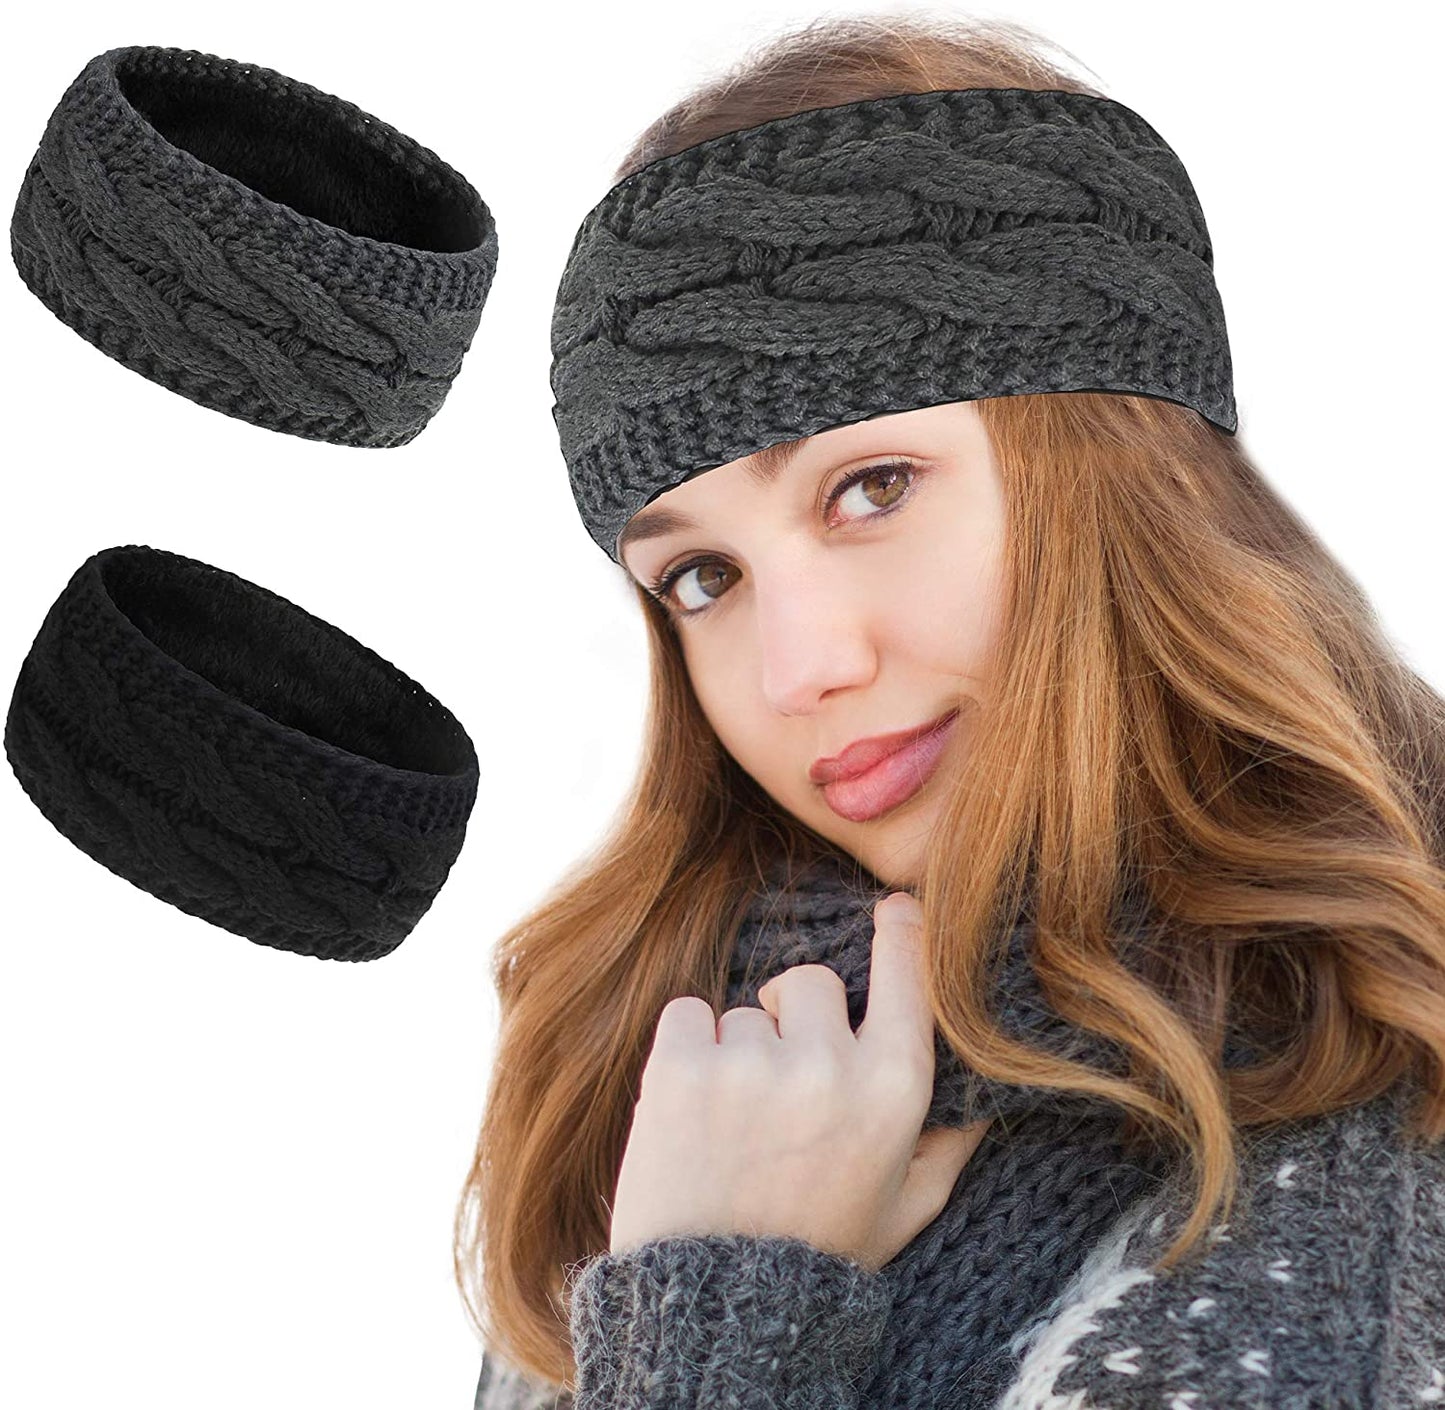 2 Pcs Winter Ears Warmer Headbands Women Cable Thick Knit Fuzzy Fleece